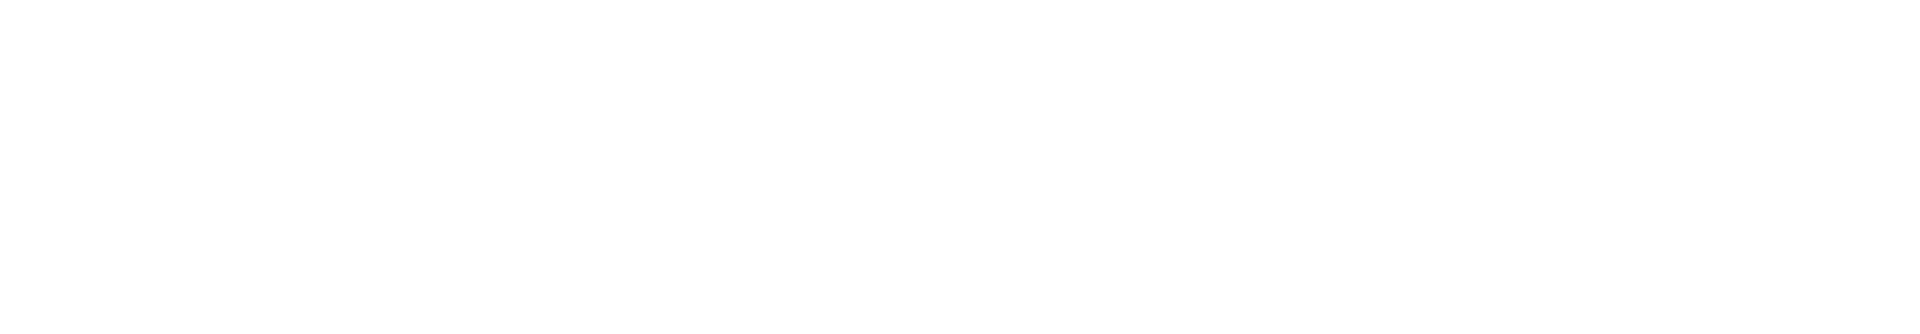 Habyt_Logo_Wordmark_White_RGB_1920px